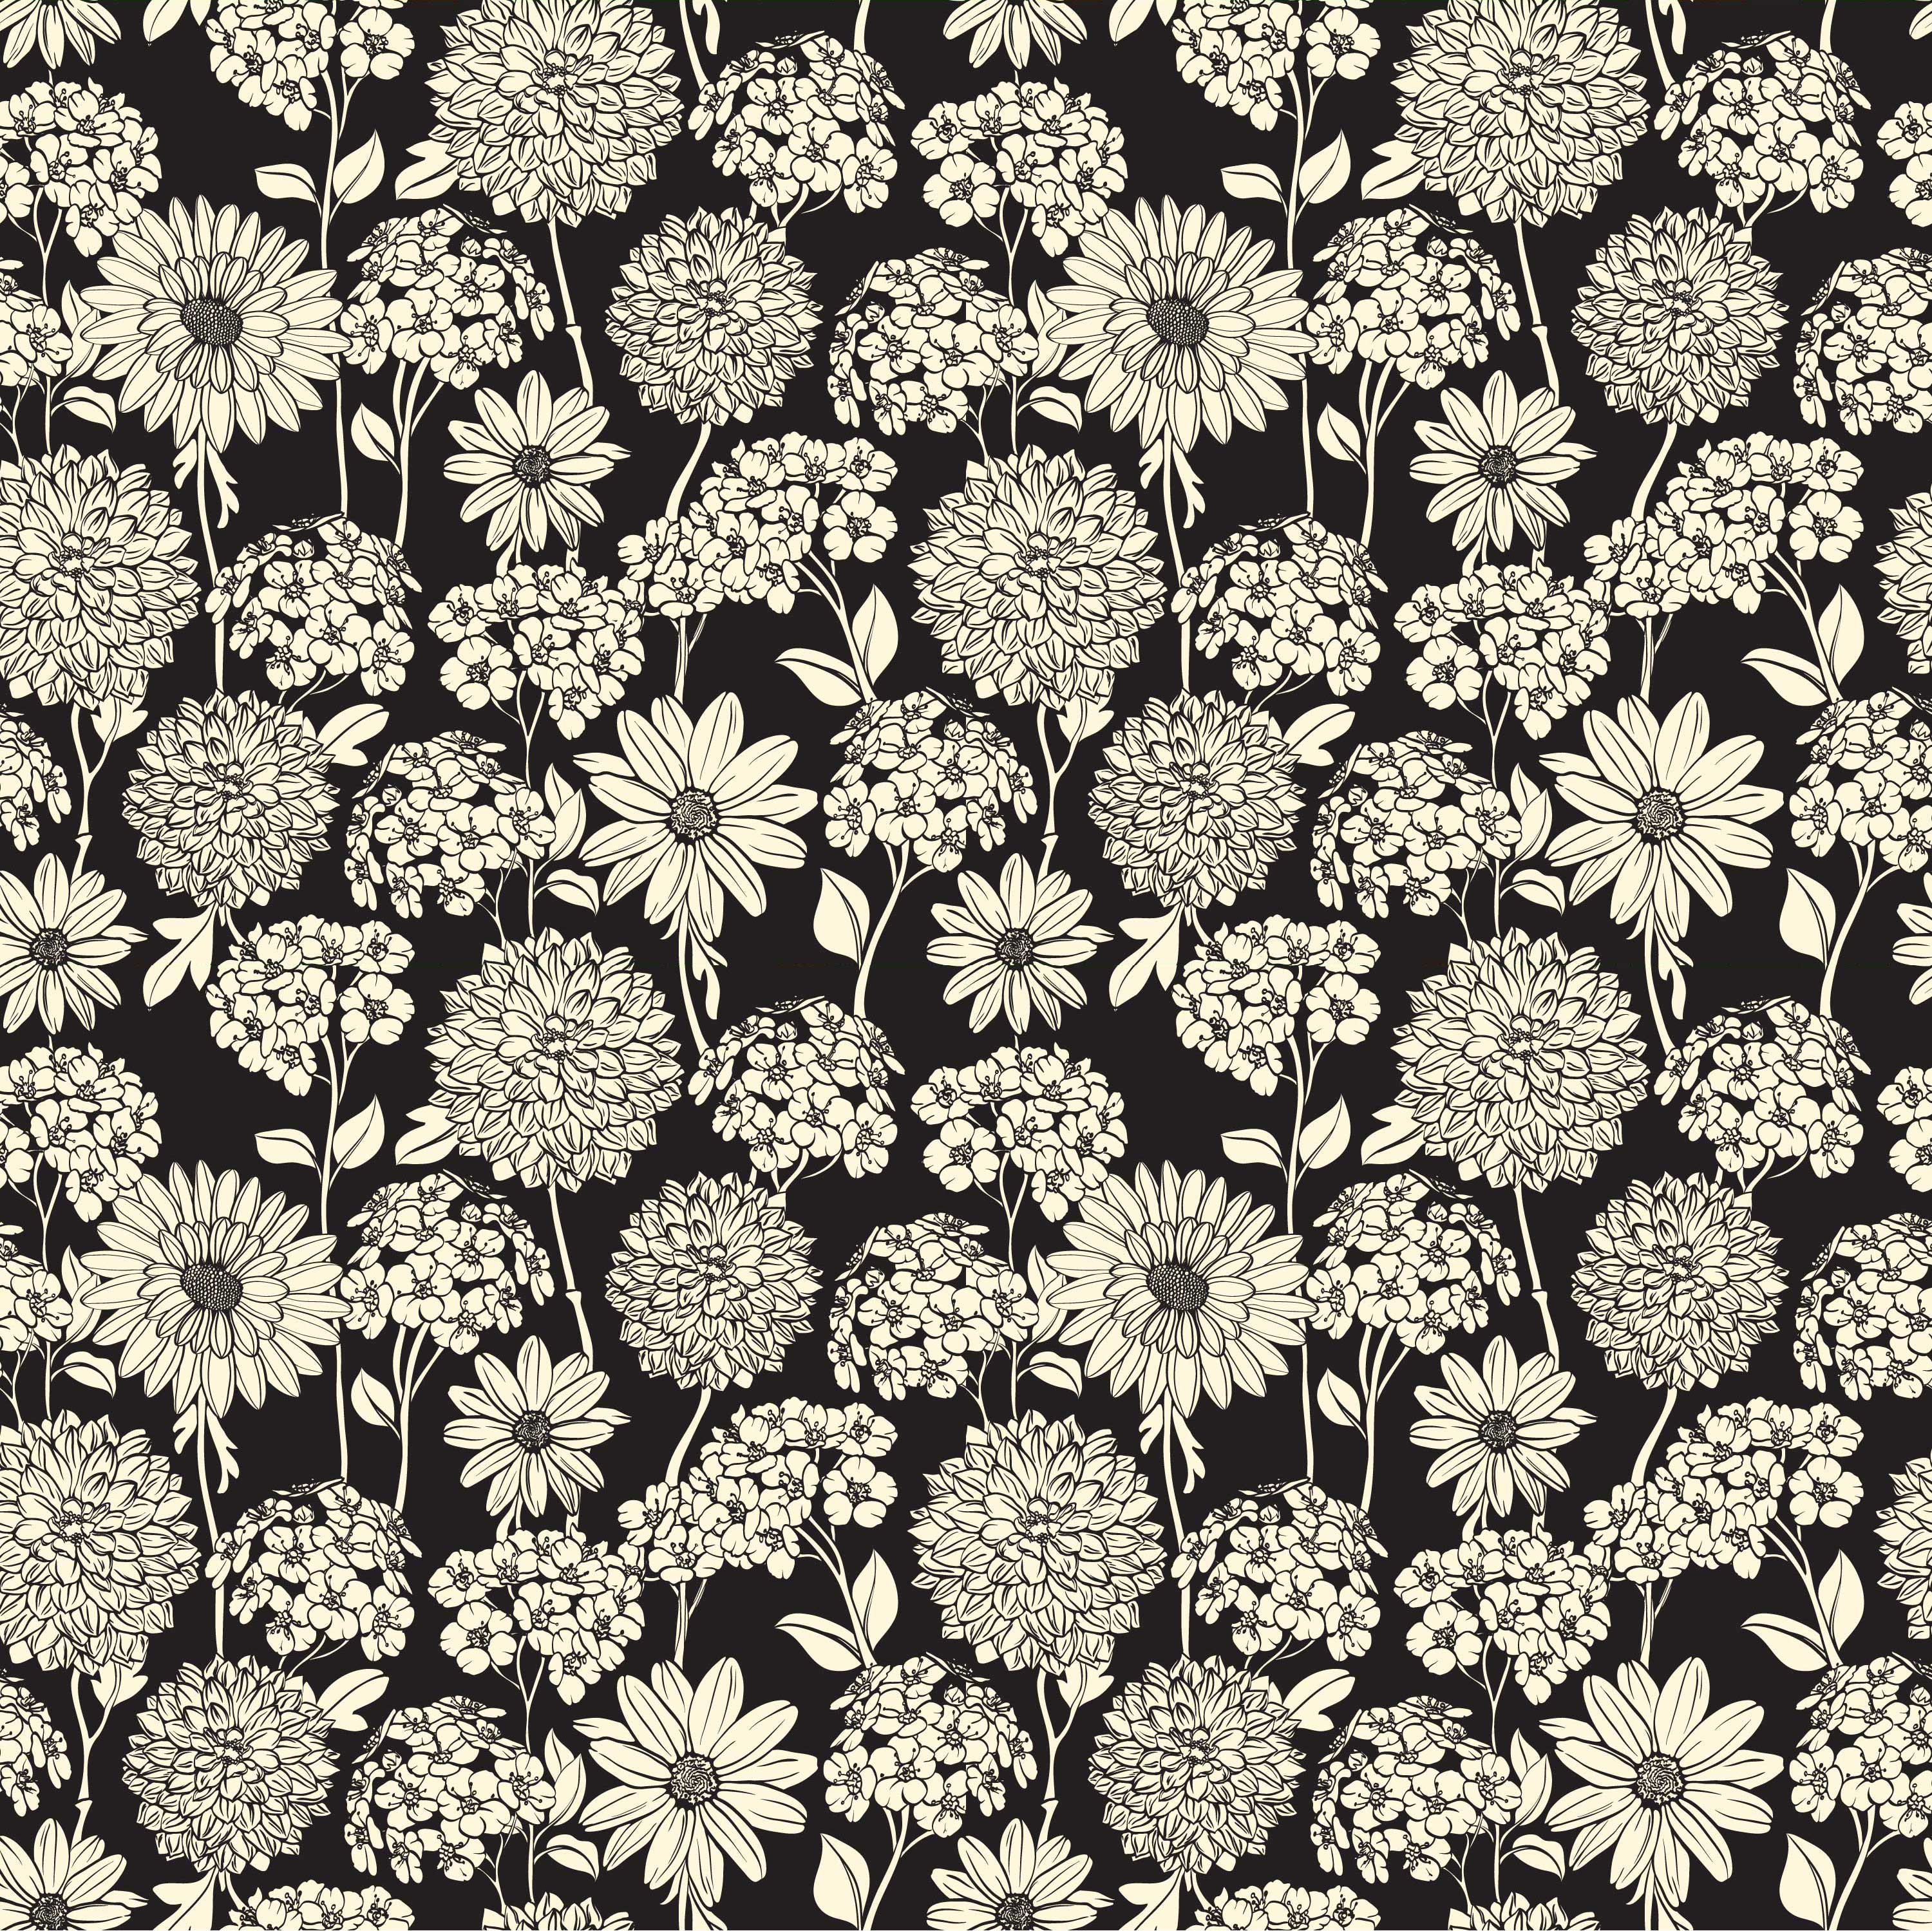 壁紙 背景イラスト 花の模様 柄 パターン No 213 白黒 多種多様